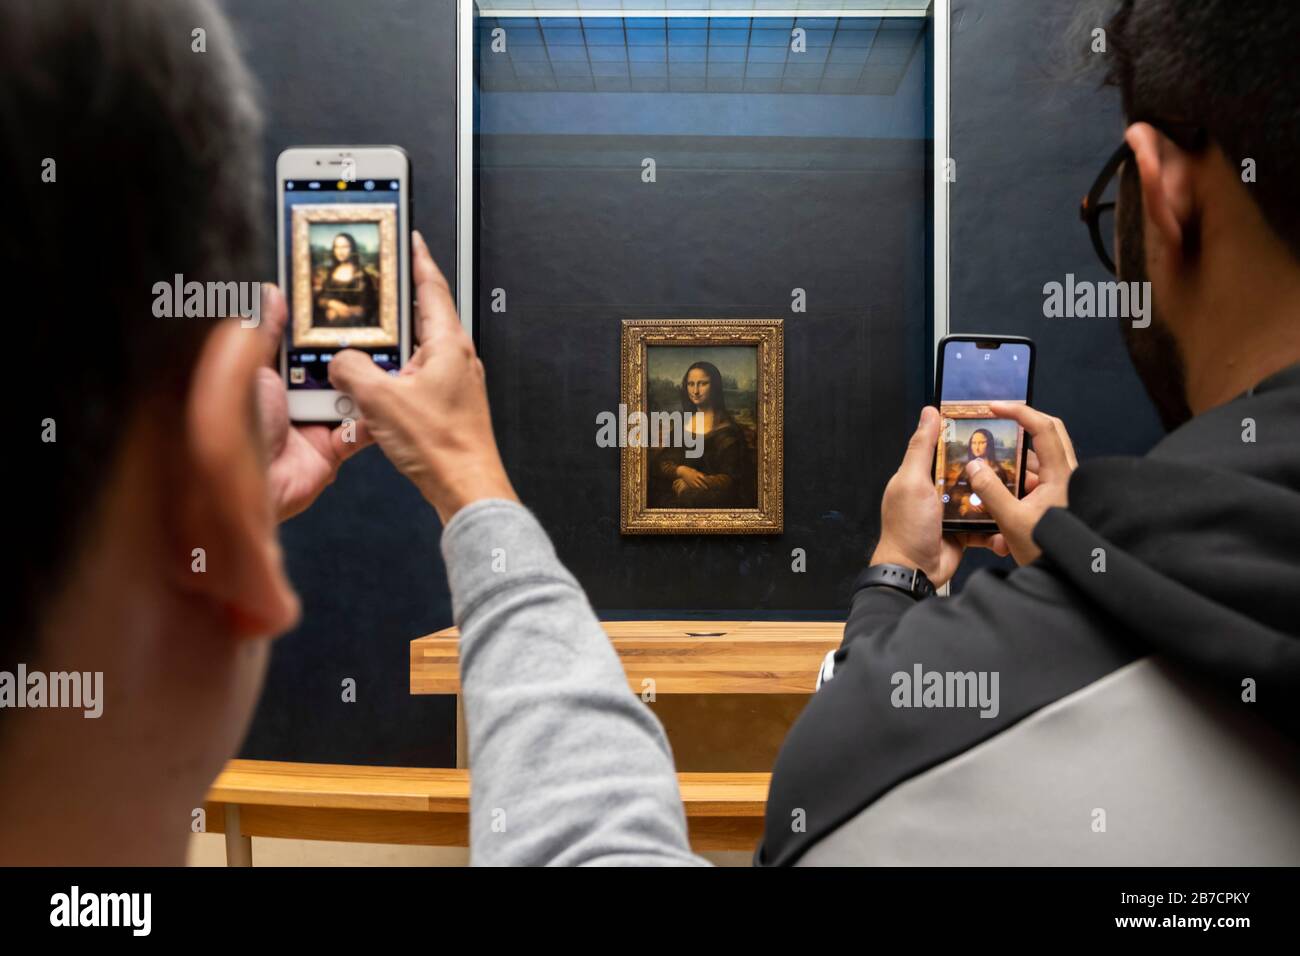 Zwei Touristen, die mit ihren Smartphones Bilder vom Gemälde Mona Lisa des Künstlers Leonardo da Vinci, Louvre Museum, Paris, Frankreich, Europa machen Stockfoto